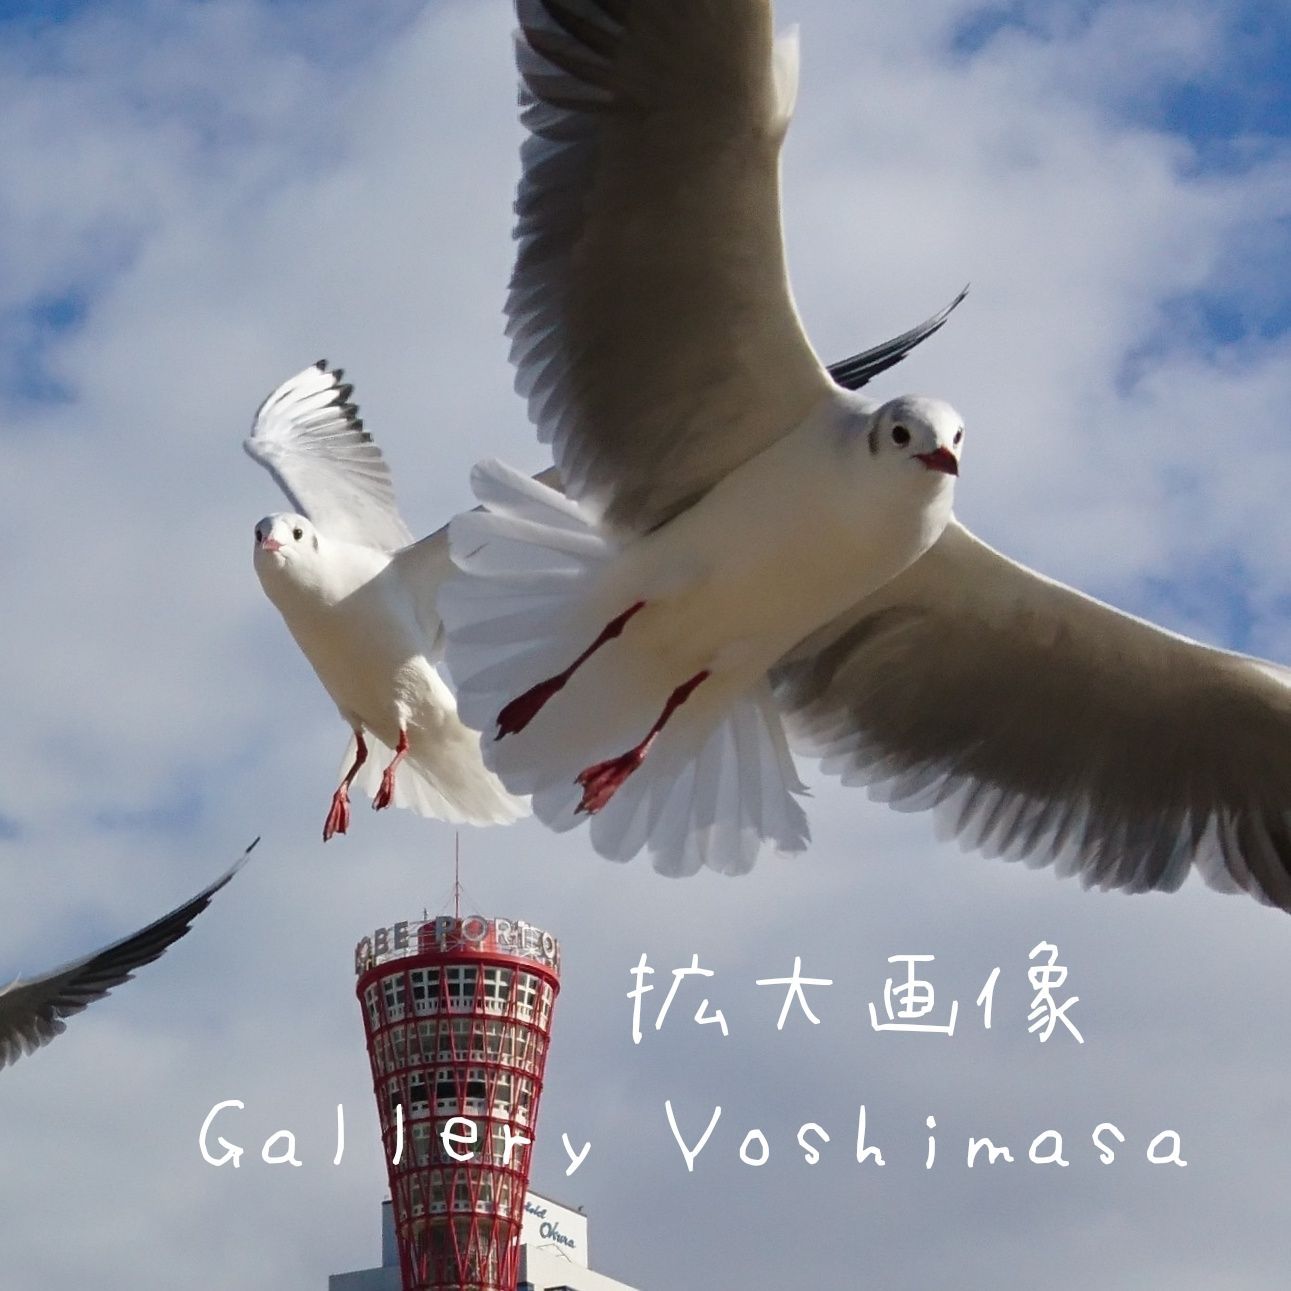 限定販売】 みなと神戸に咲く華 ユリカモメ A3 サイズ光沢写真縦 写真